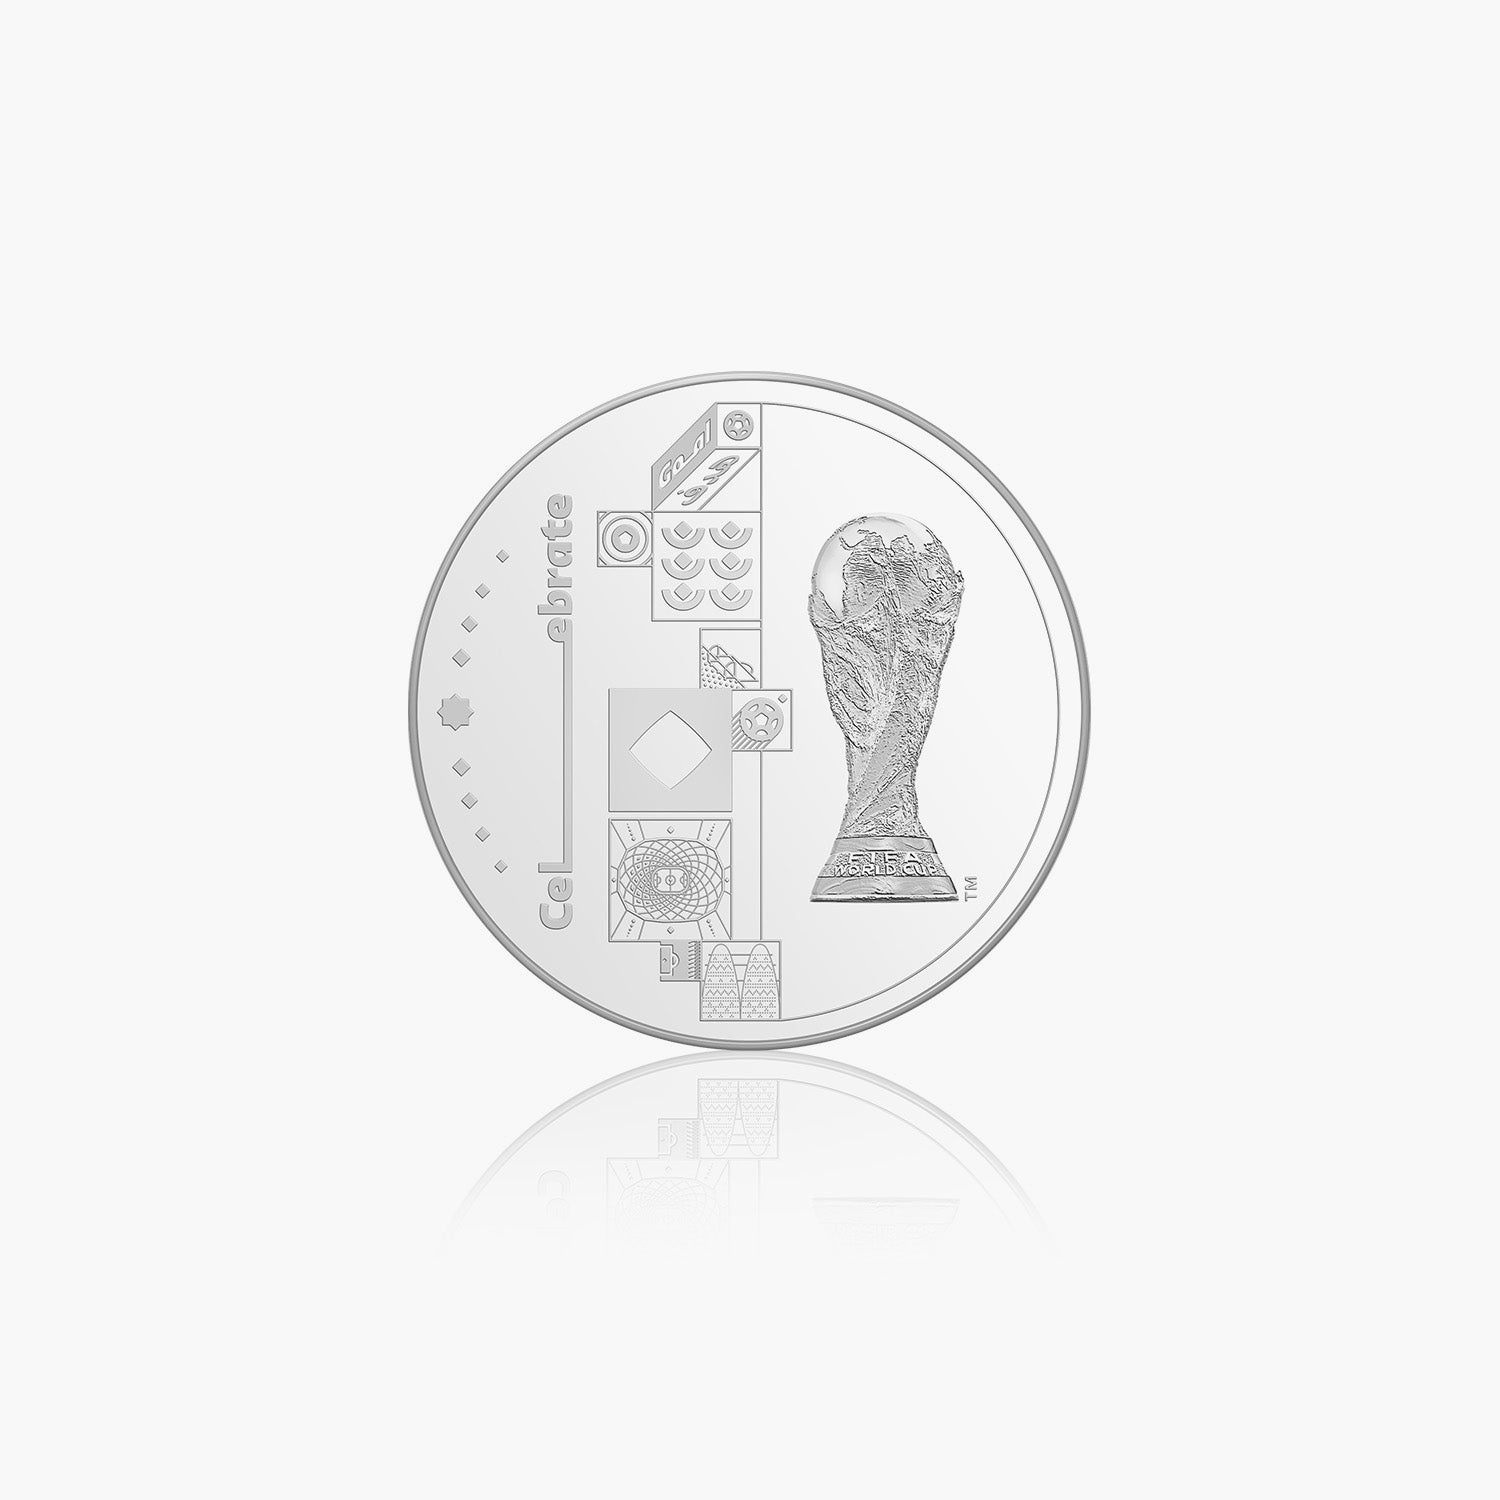 FIFA World Cup 2022‚ 32mm Commemorative